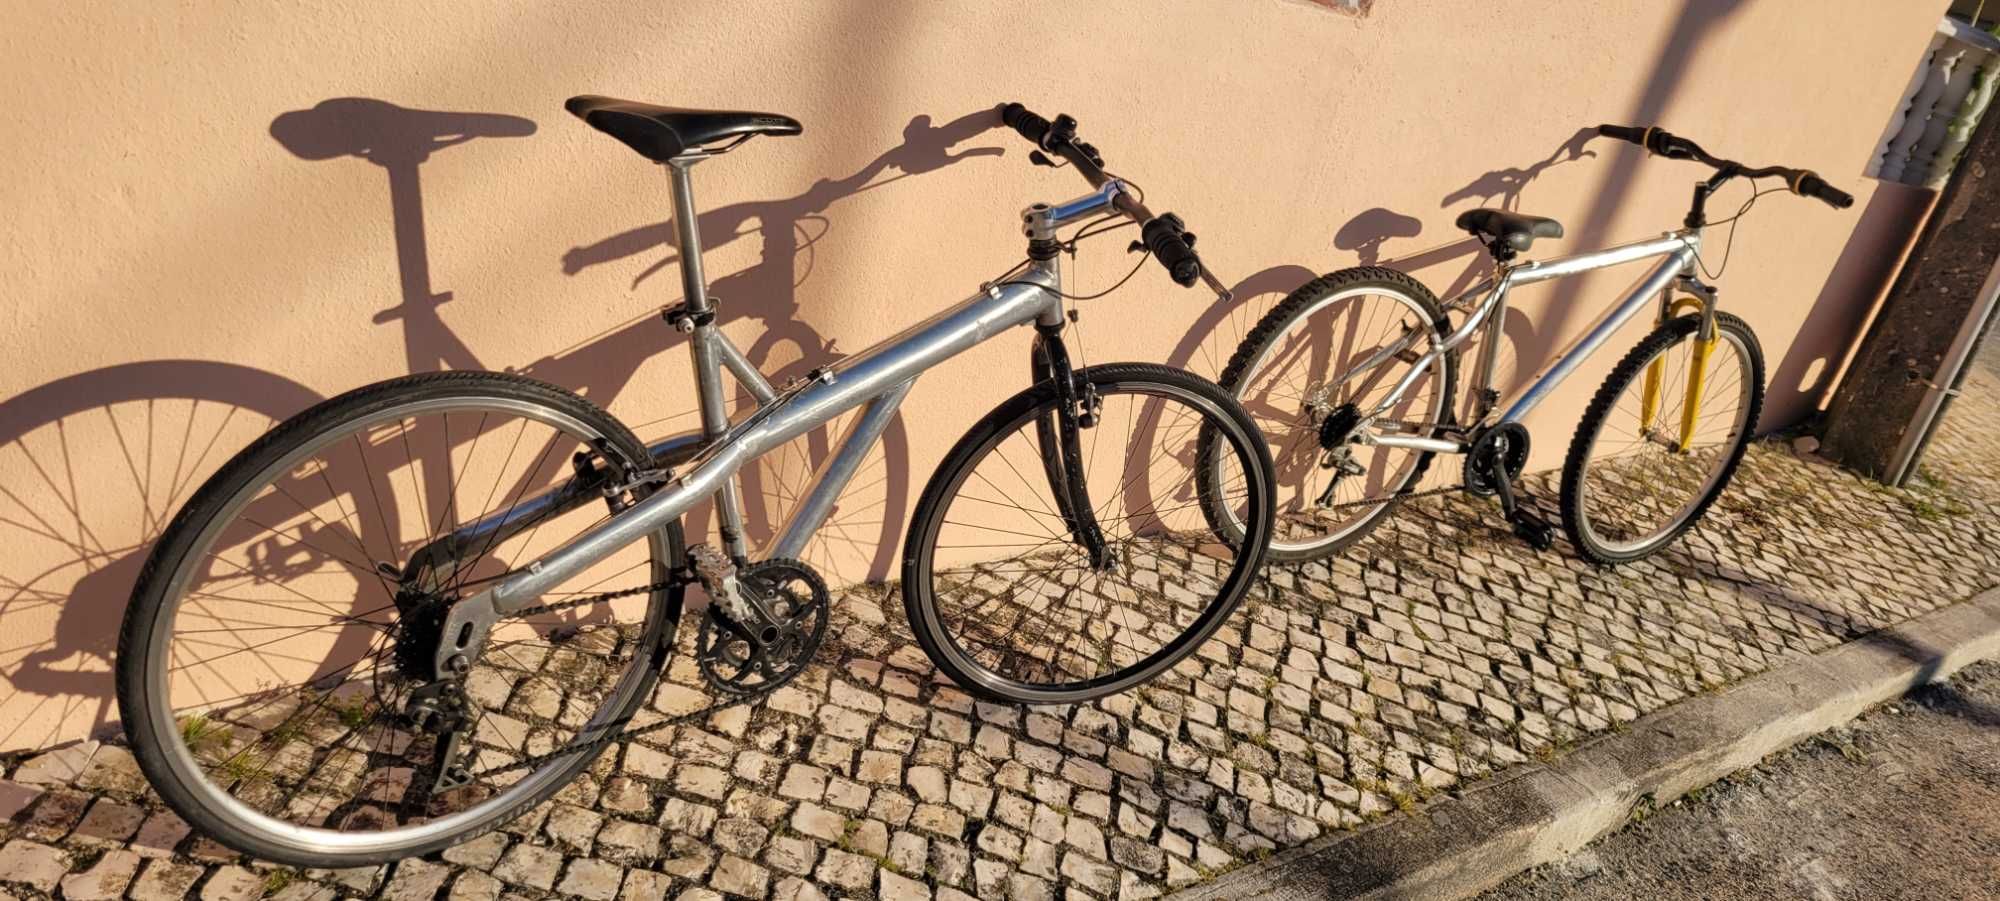 Bicicletas free still e tt